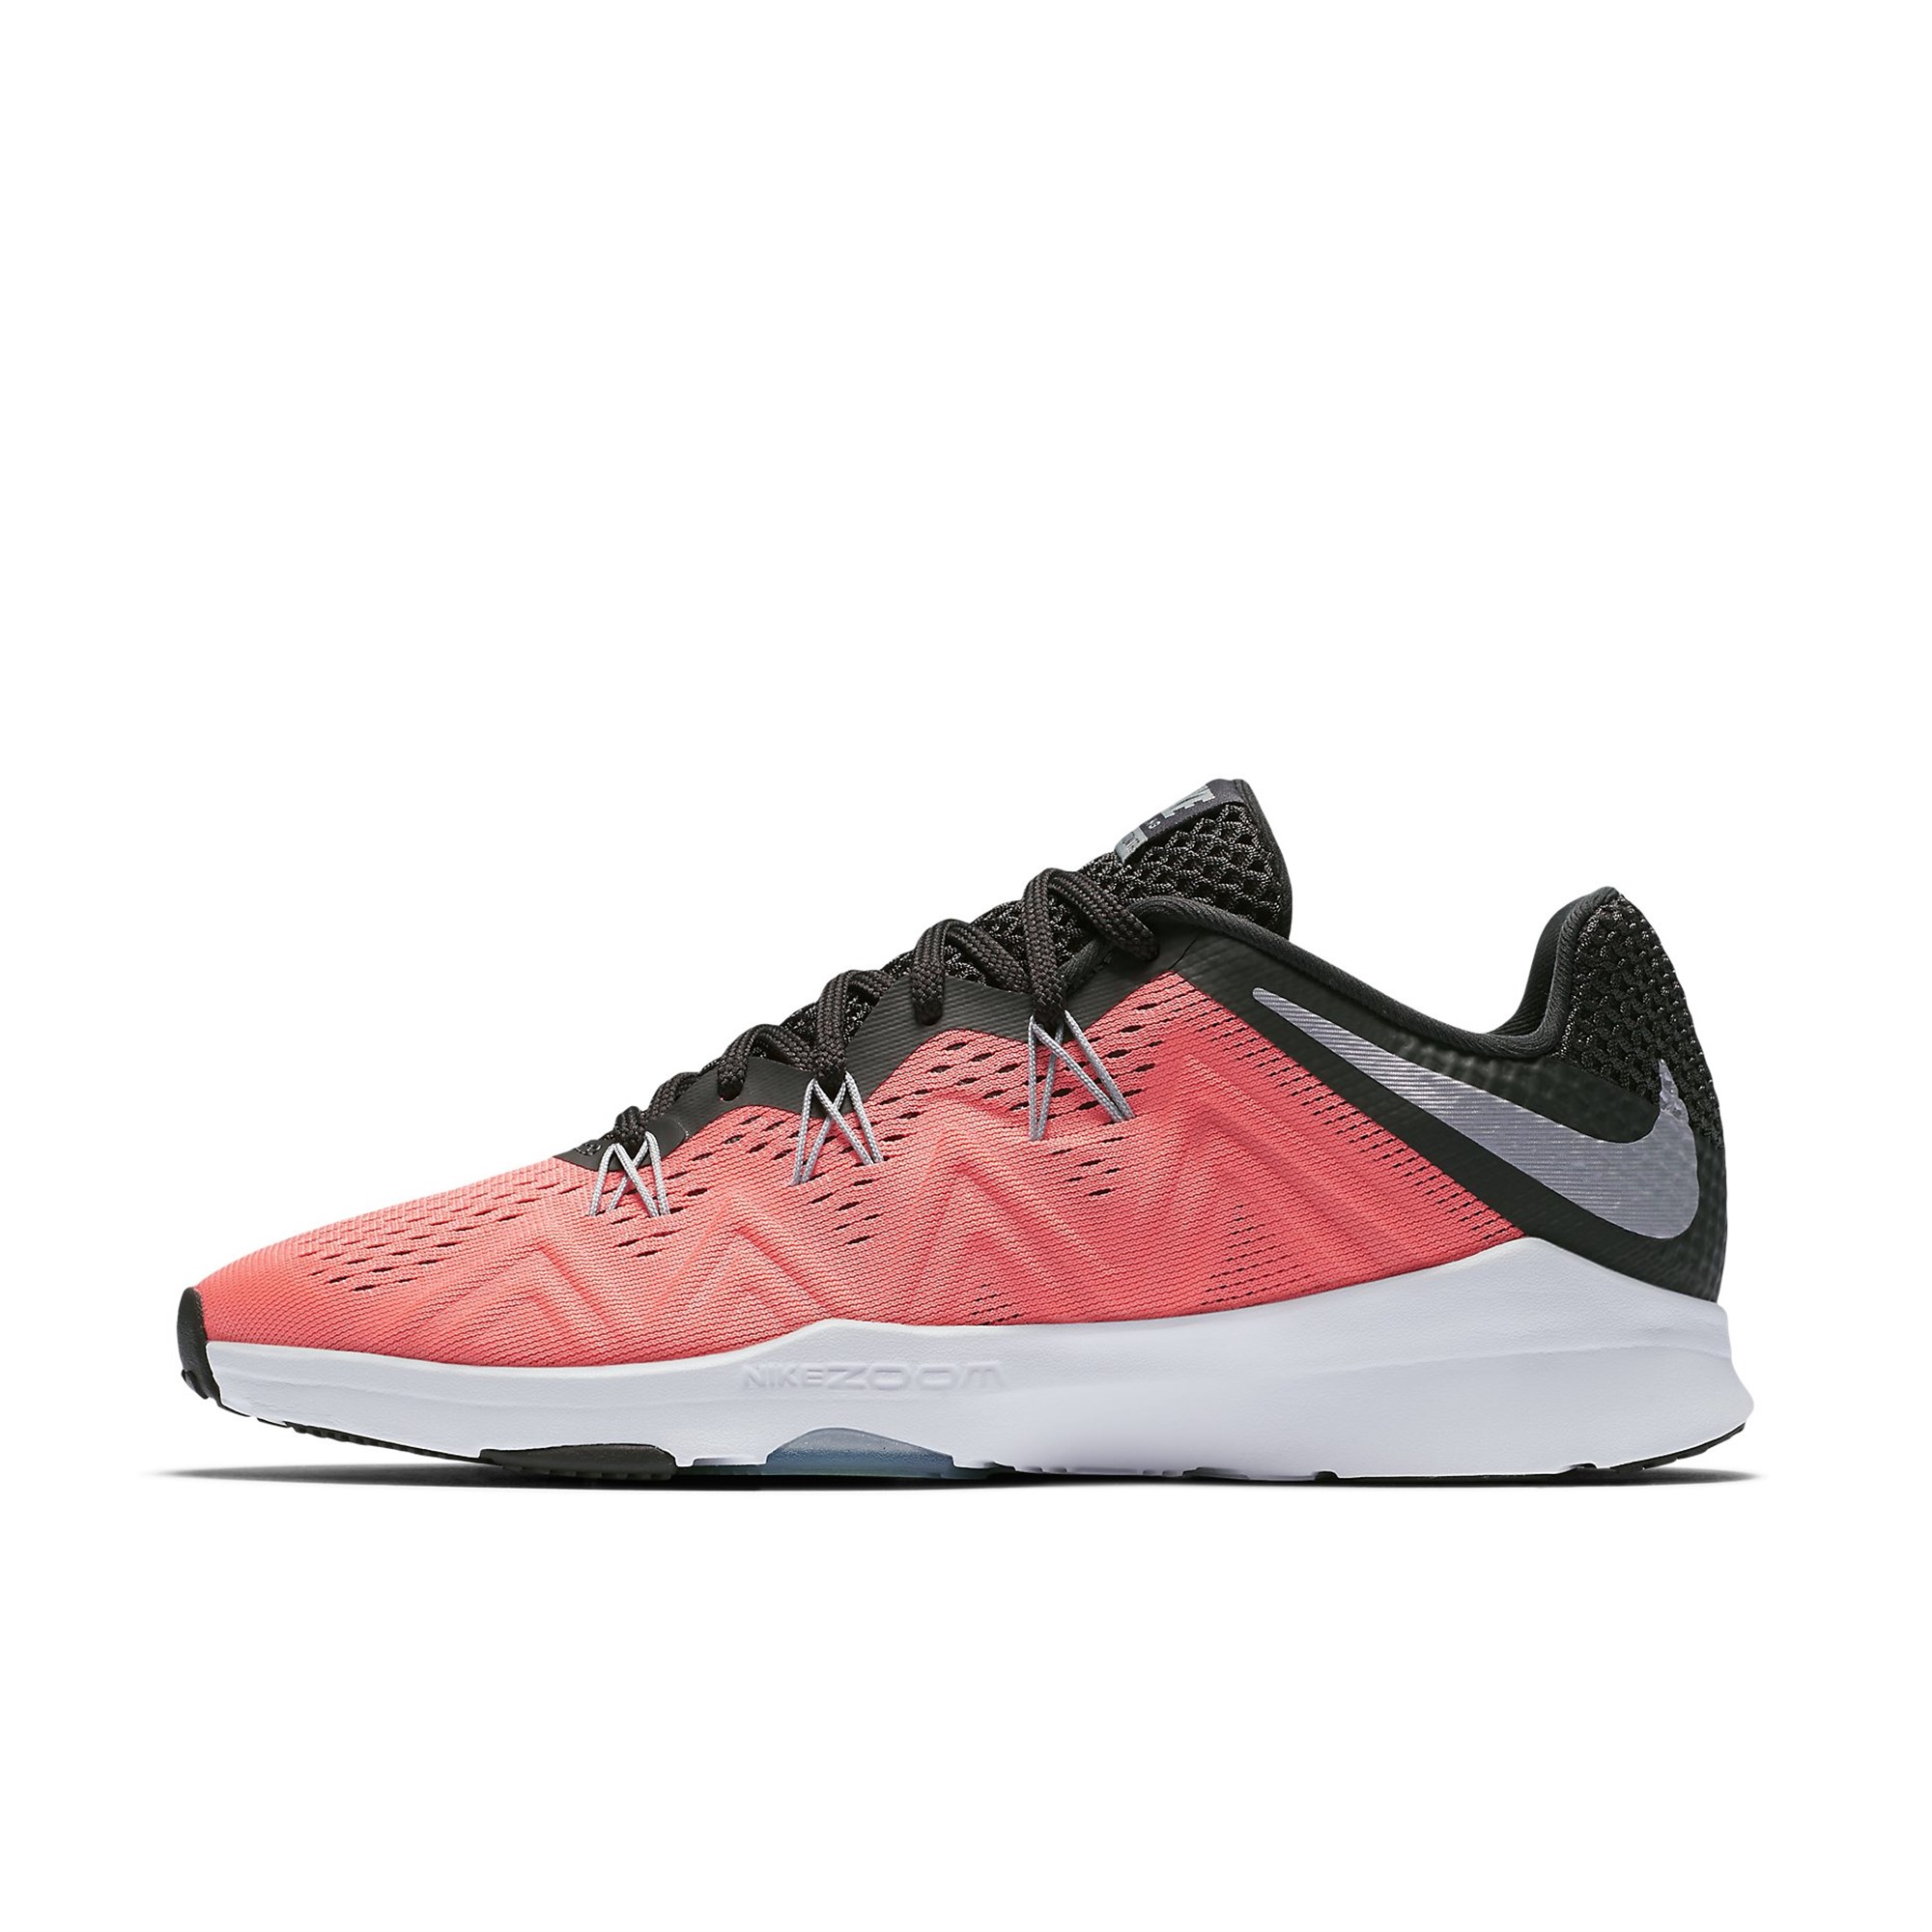 Nike Zoom Condition TR Bayan Spor Ayakkabı Ürün kodu: 852472-600 | Etichet  Sport